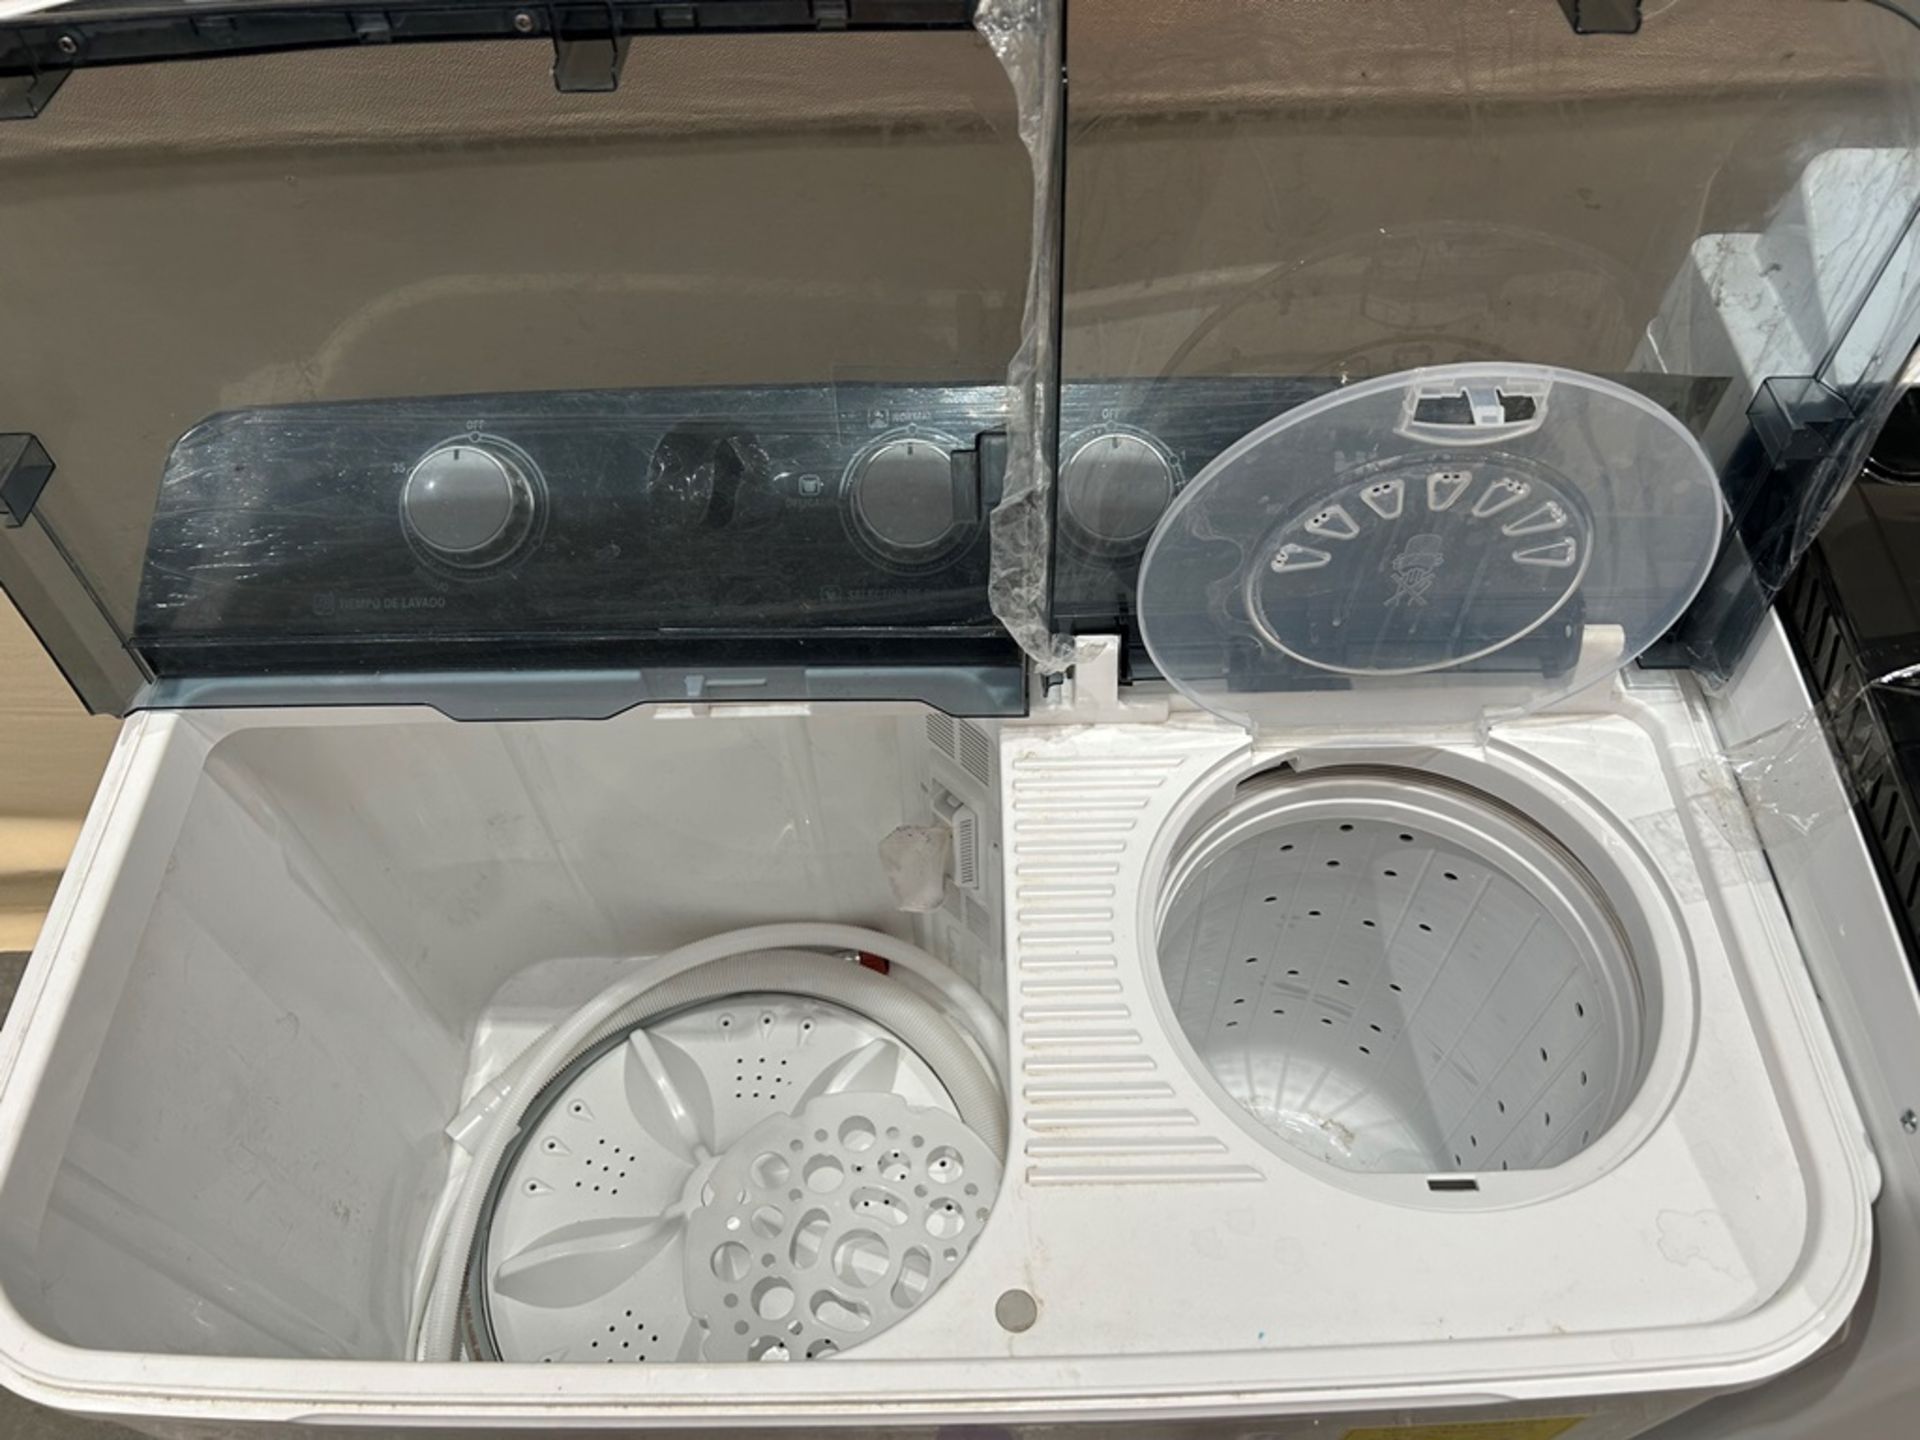 Lote de 2 lavadoras contiene: 1 Lavadora de 19 KG Marca MIDEA, Modelo MT100W190, Serie 01241, Color - Image 4 of 6